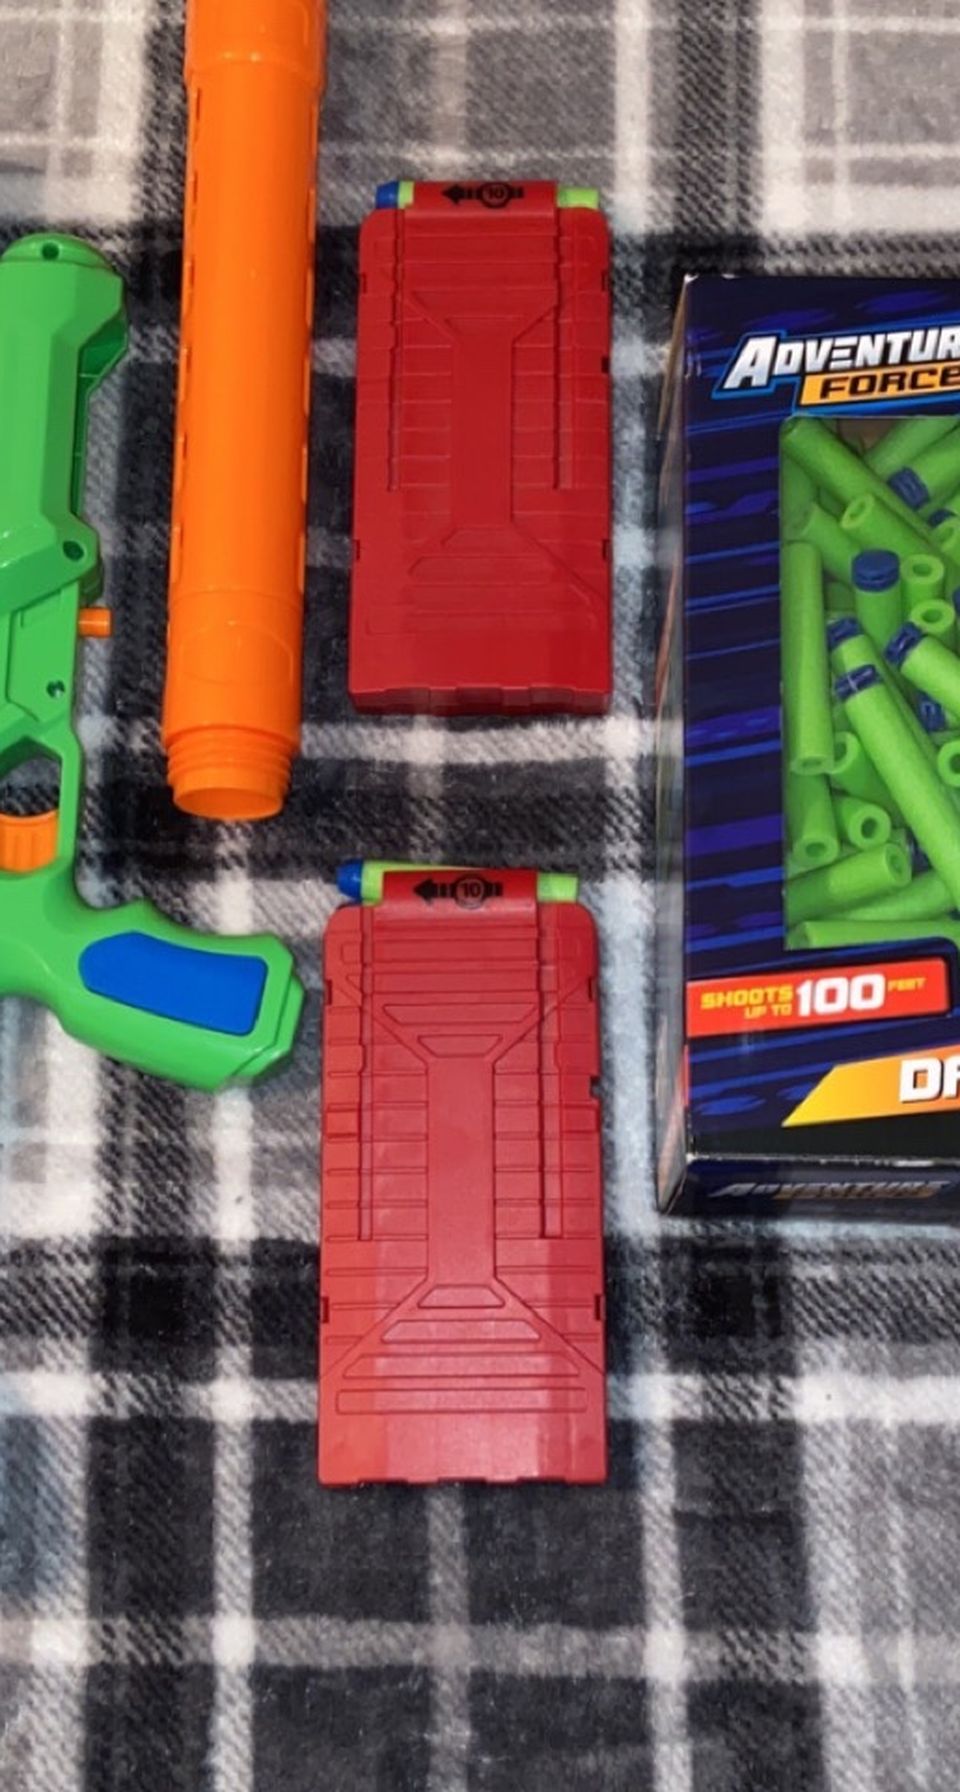 Toy Gun And Accessories (dart)